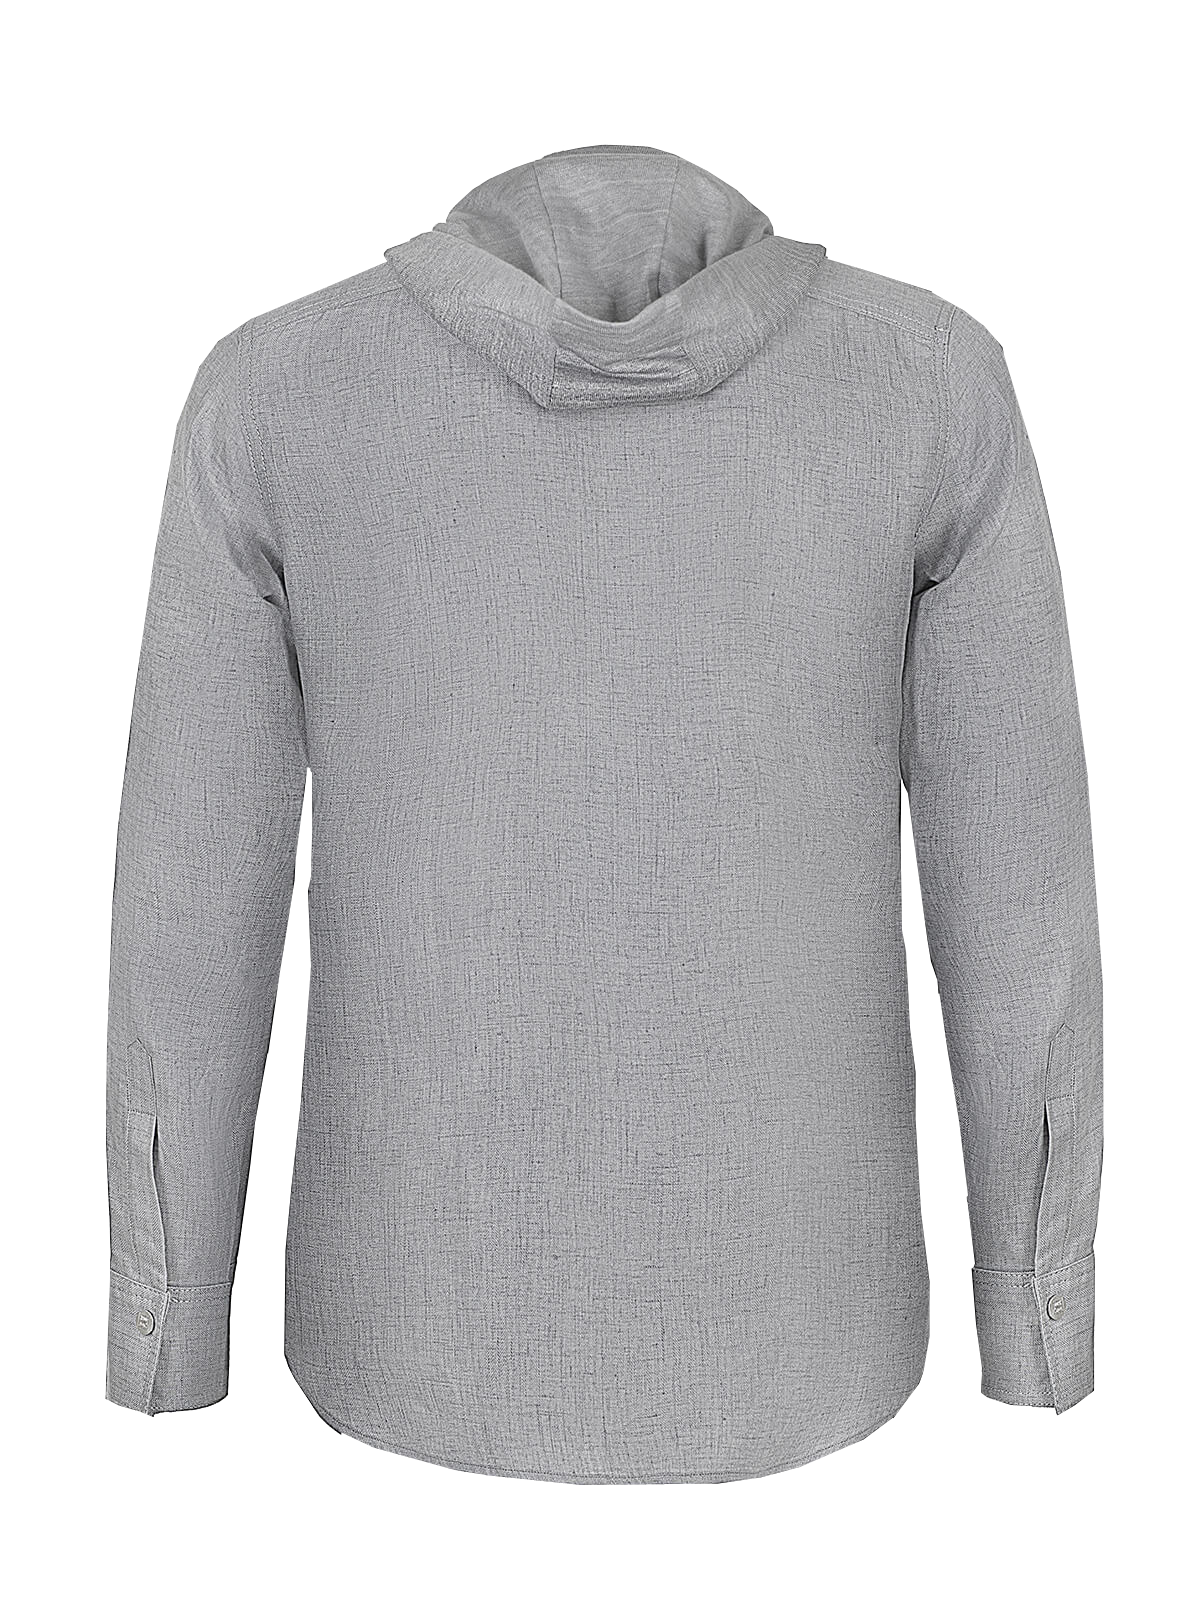 Camicia Cappuccio 100% Capri light grey linen t-shirt back